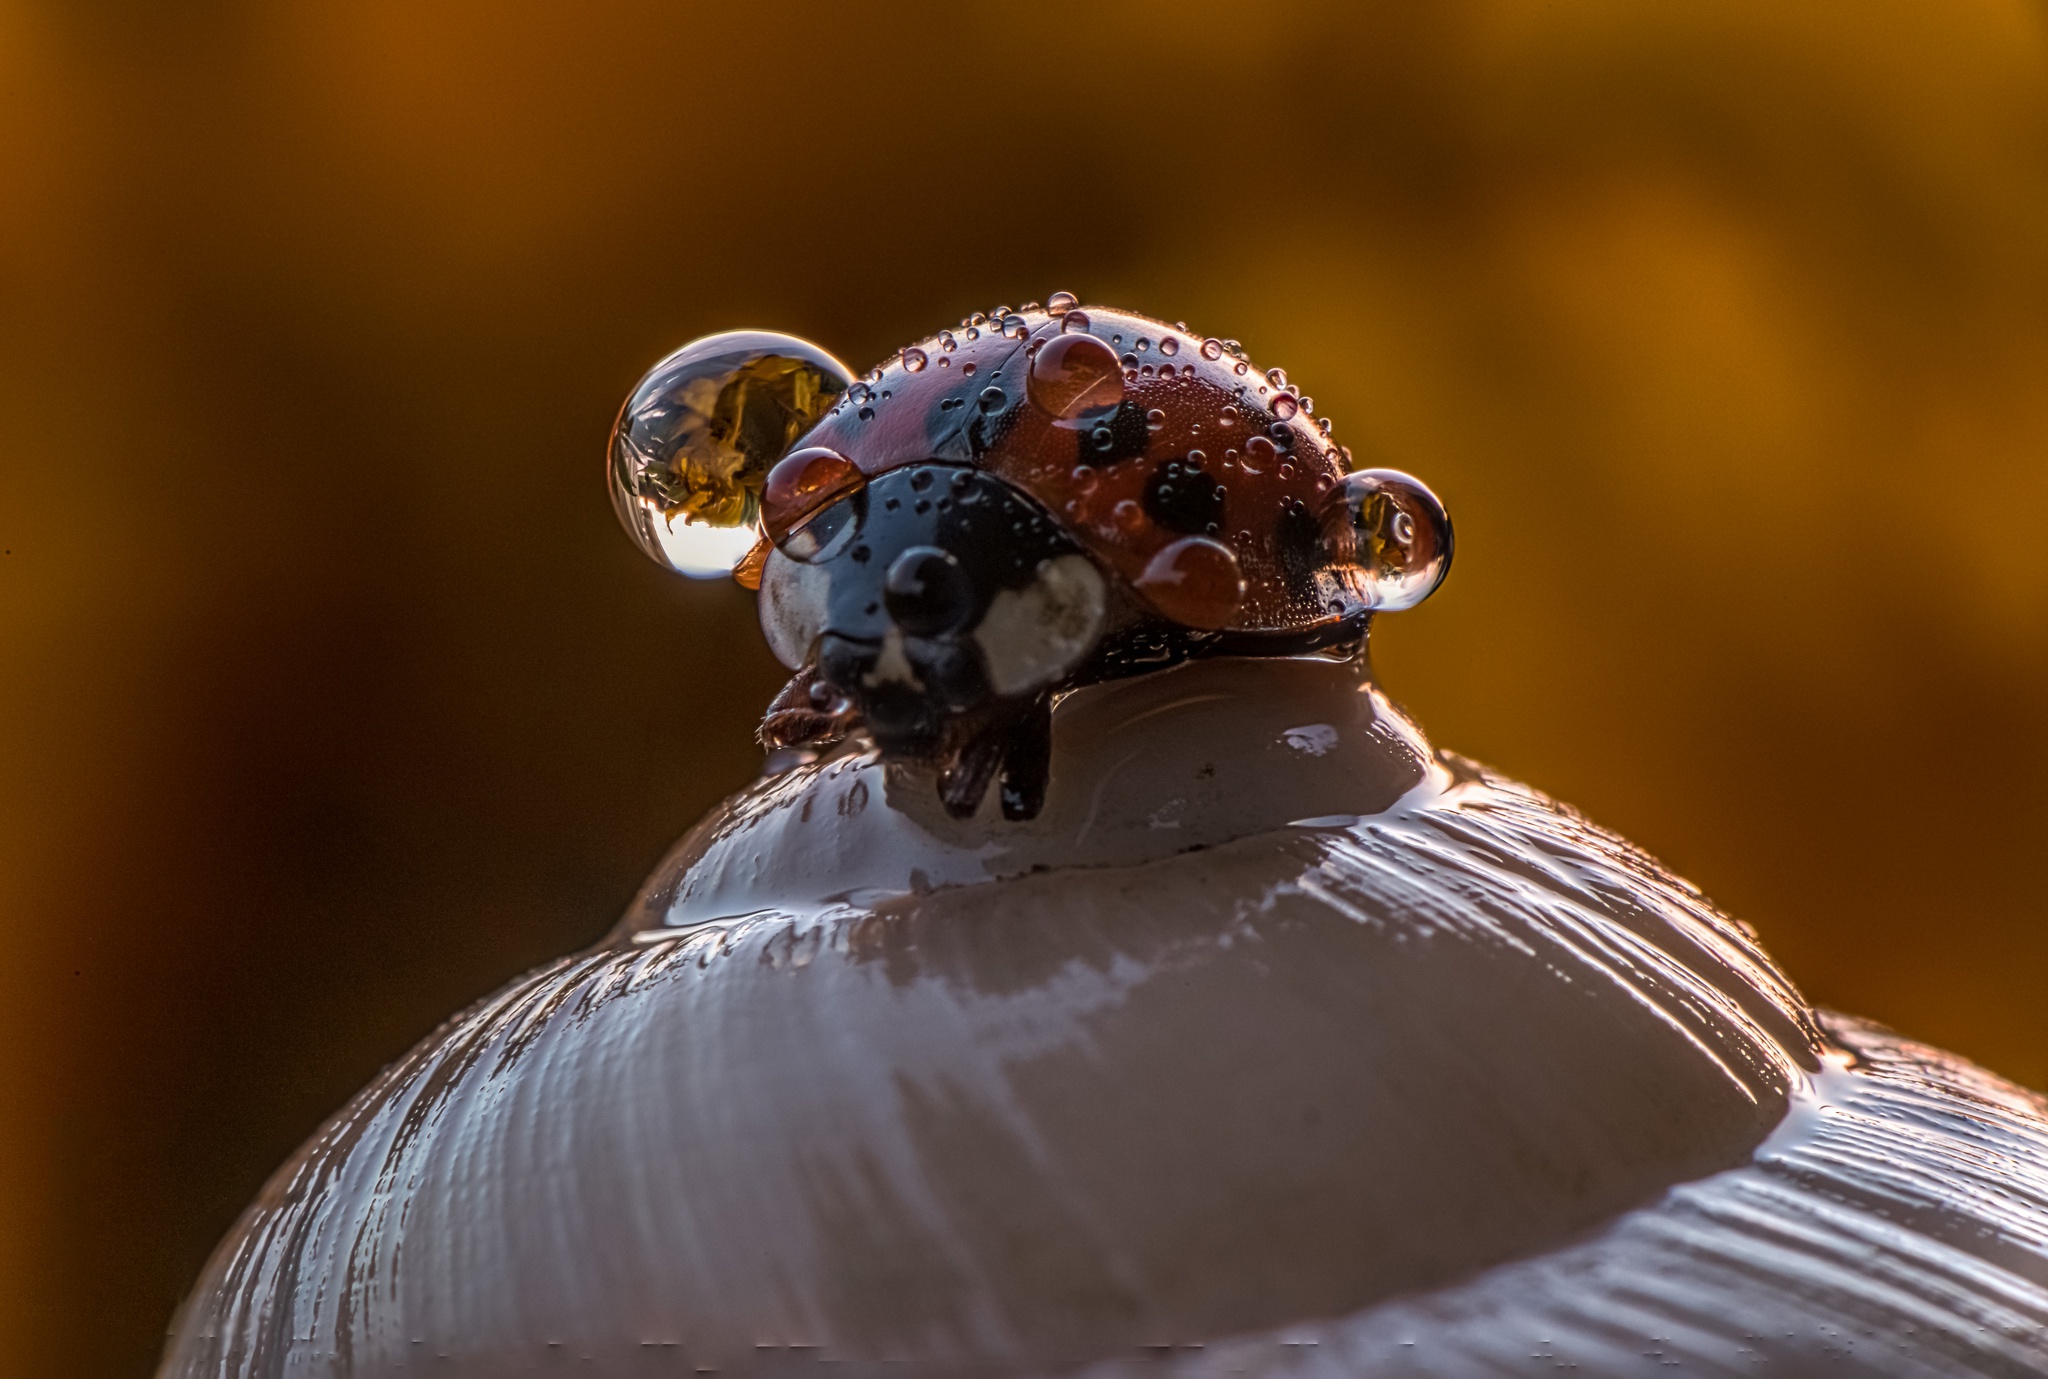 Insect Ladybug Macro Water Drop 2048x1379